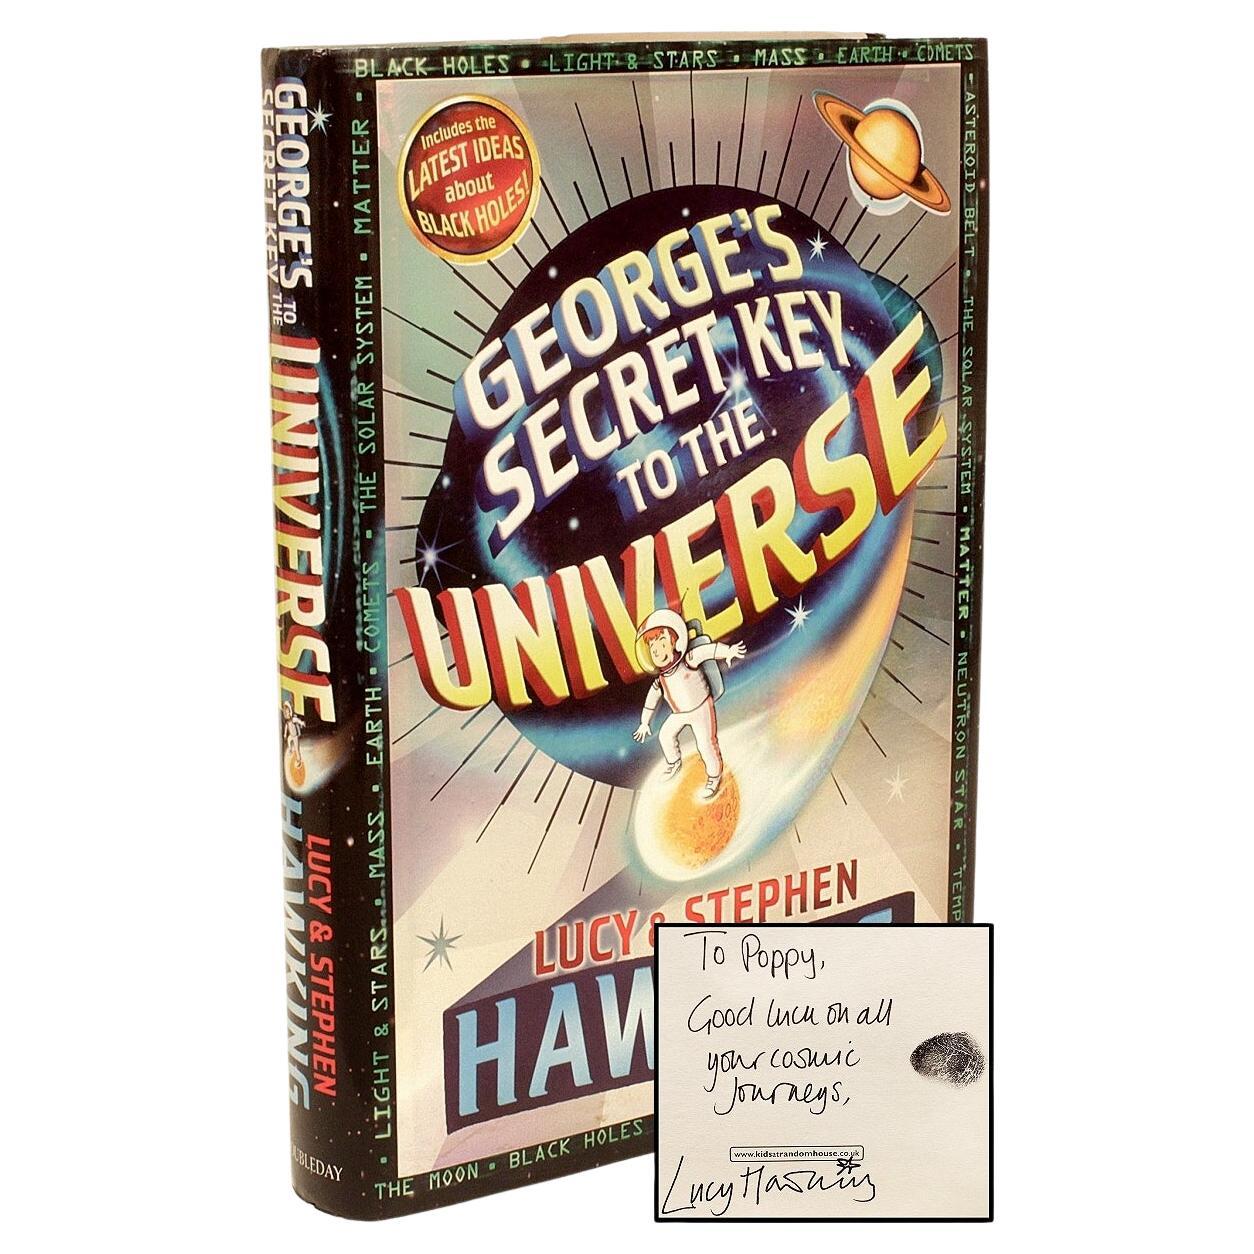 Lucy et Stephen Hawking. La clé secrète de George à l'Univers, 1ère édition, signée